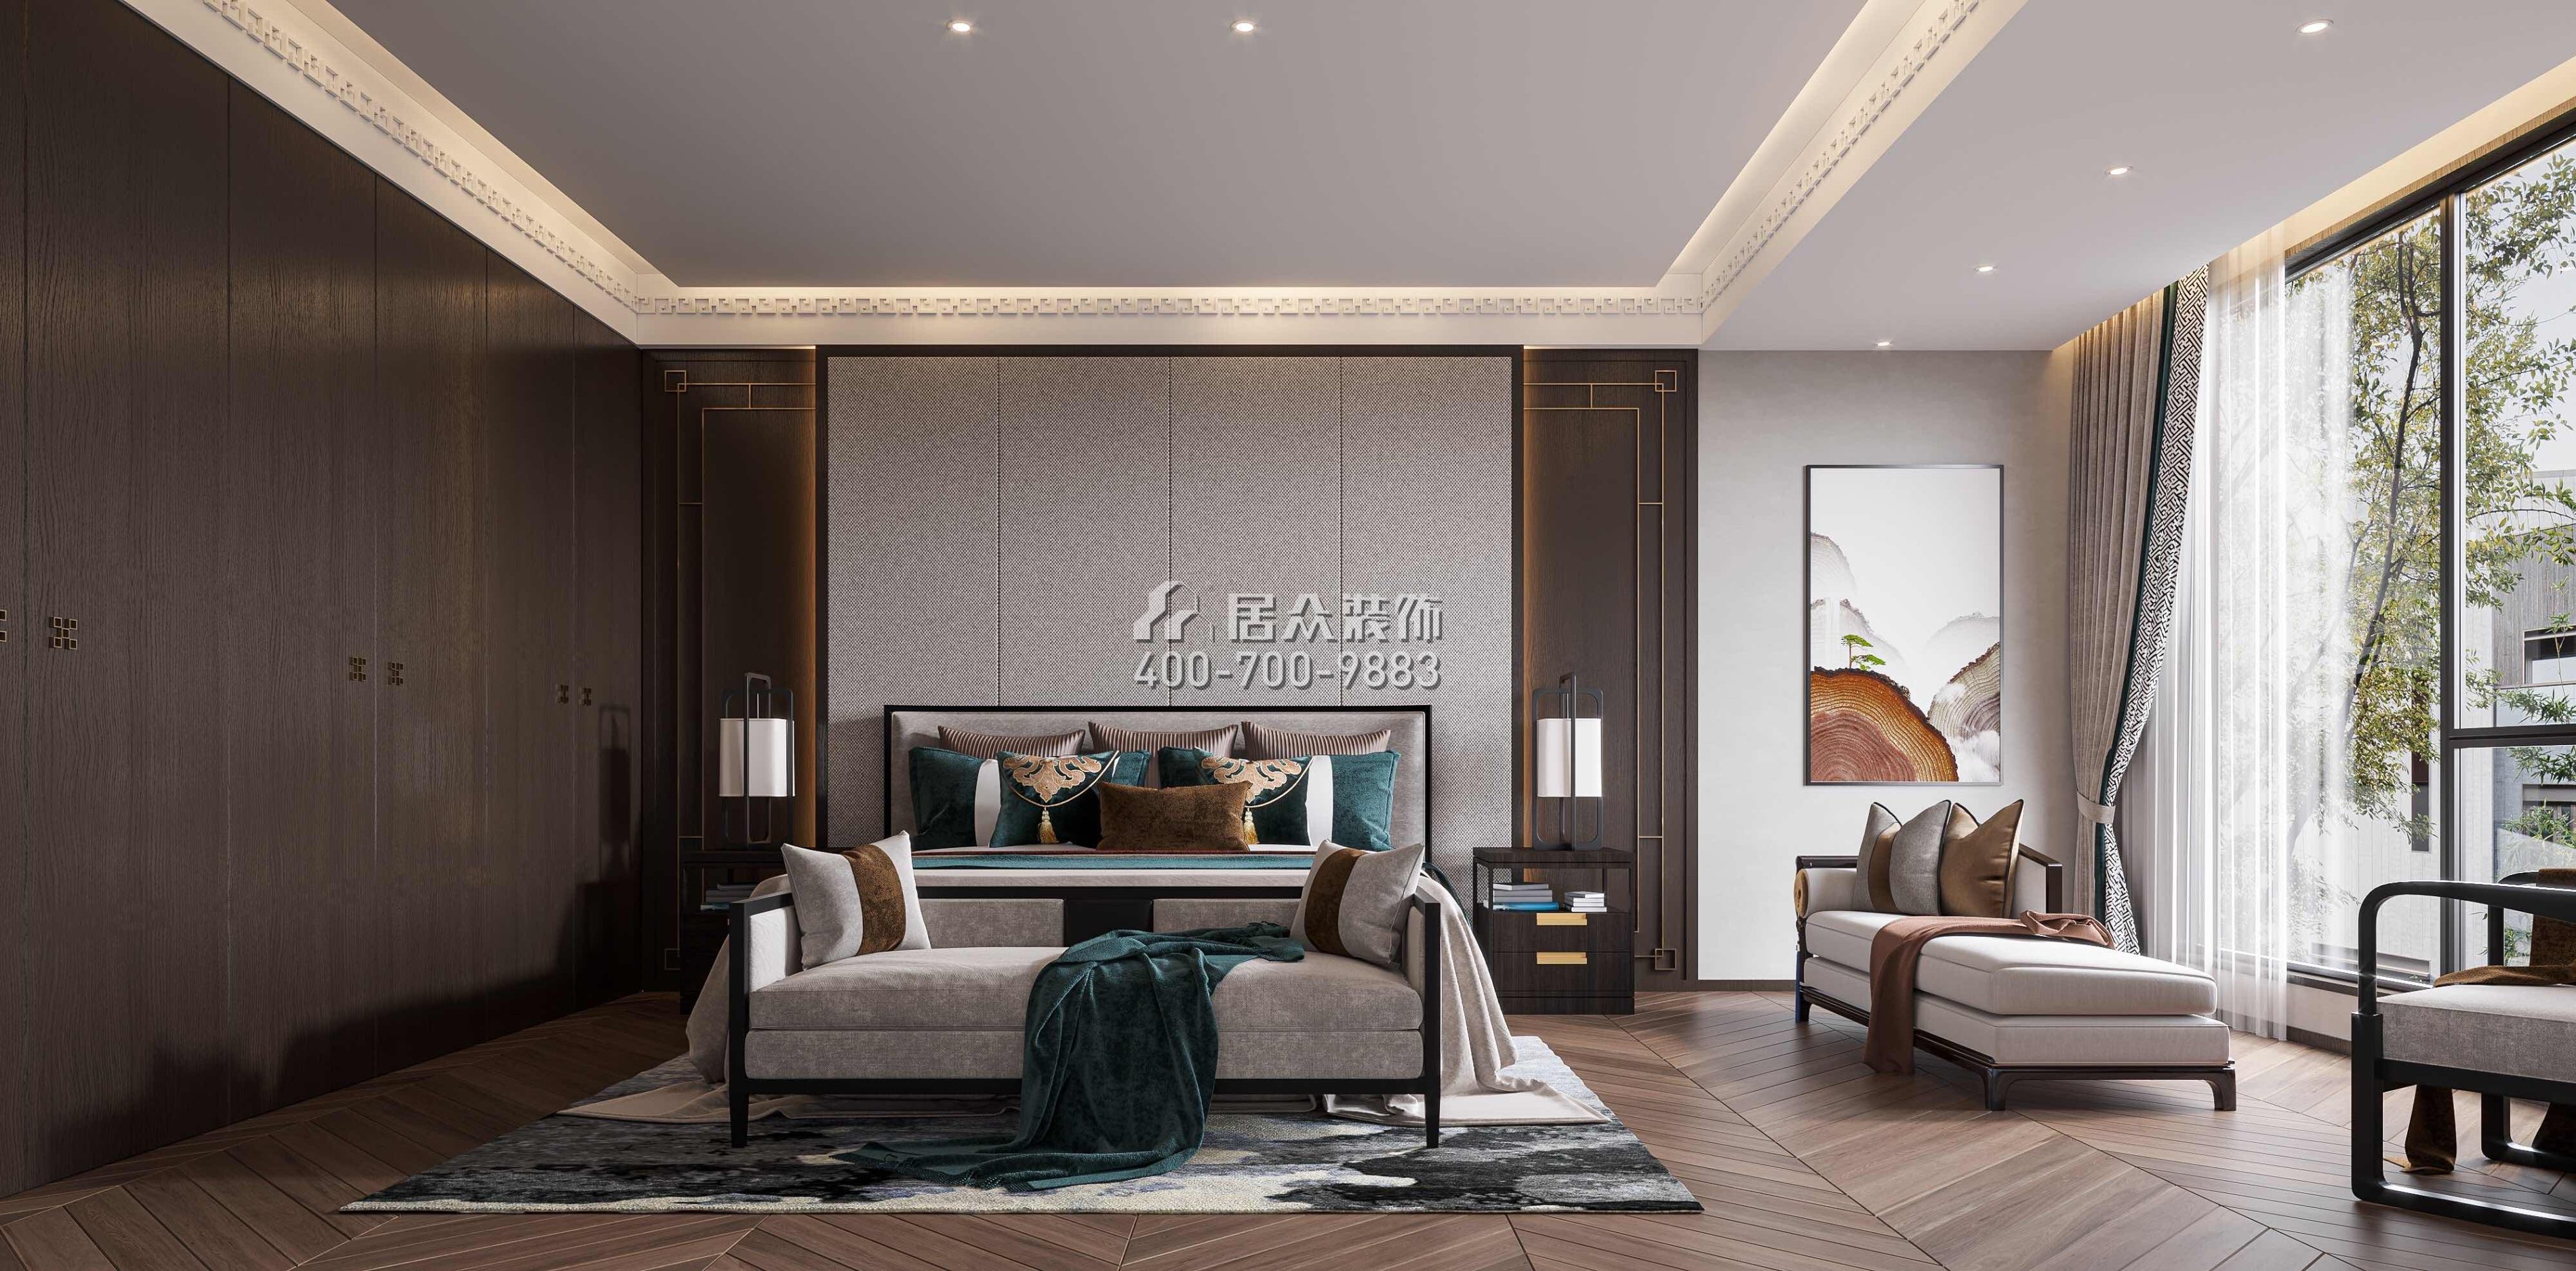 新世纪颐龙湾380平方米中式风格别墅户型卧室装修效果图